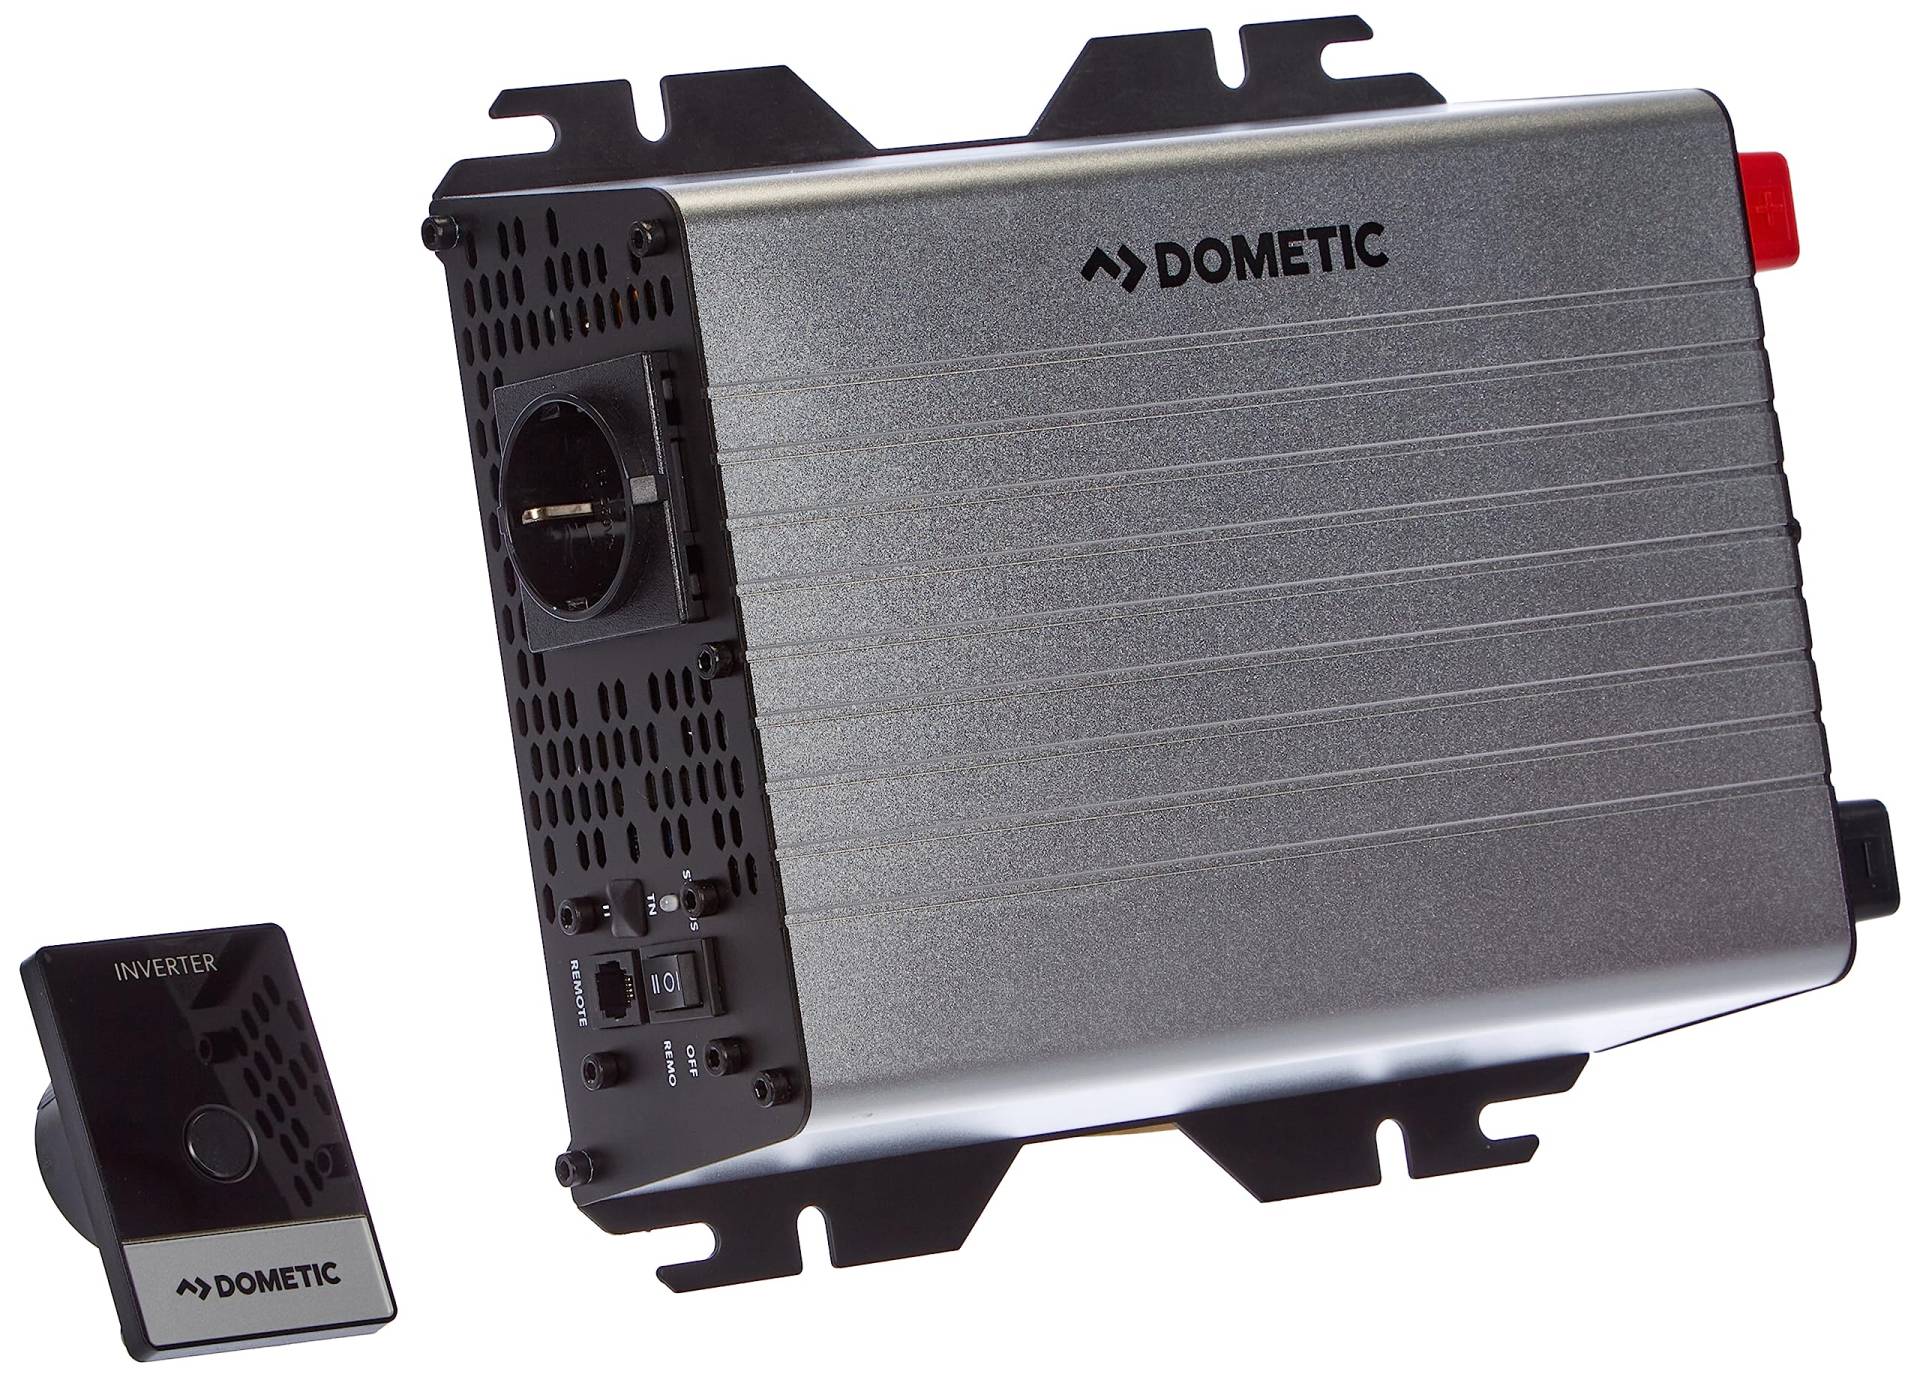 DOMETIC DSP 1012 Sinus-Wechselrichter, 1.000 W, 12 V I Mobile "Steckdose" für unterwegs, Spannungswandler, Umwandler von DOMETIC